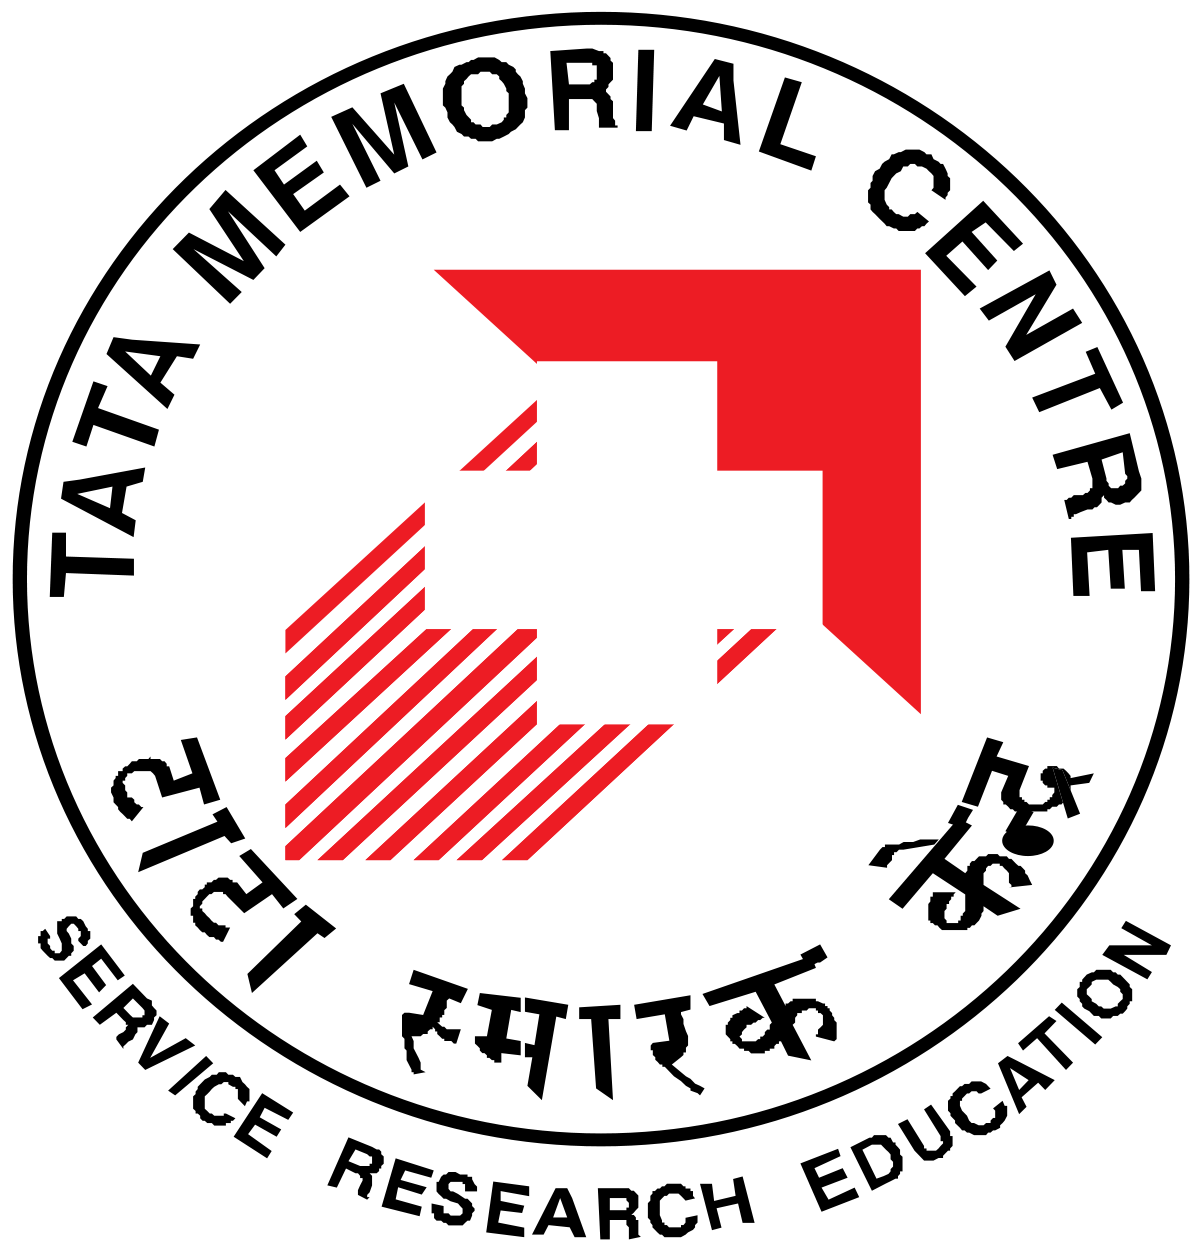 Tata Memorial Centre Recruitment 2018